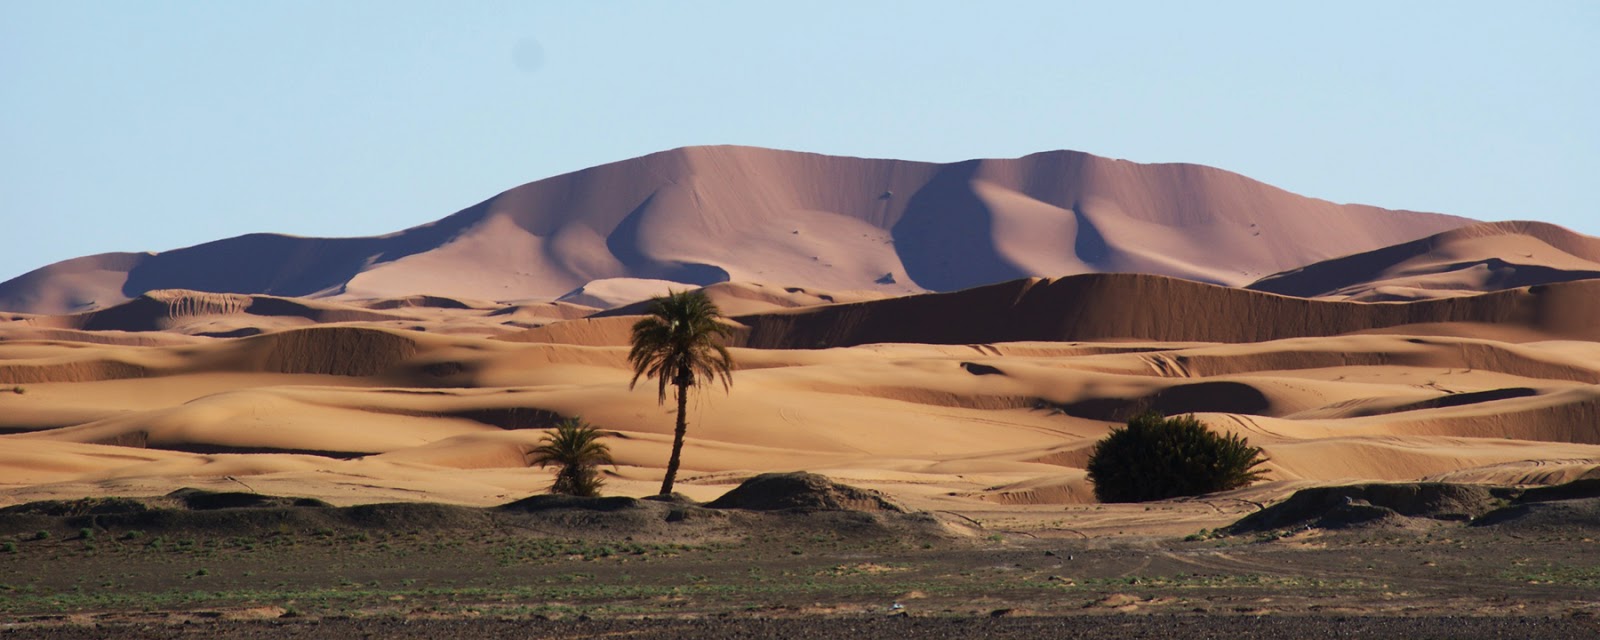 Panorama Sahara desert Erg Chebbi